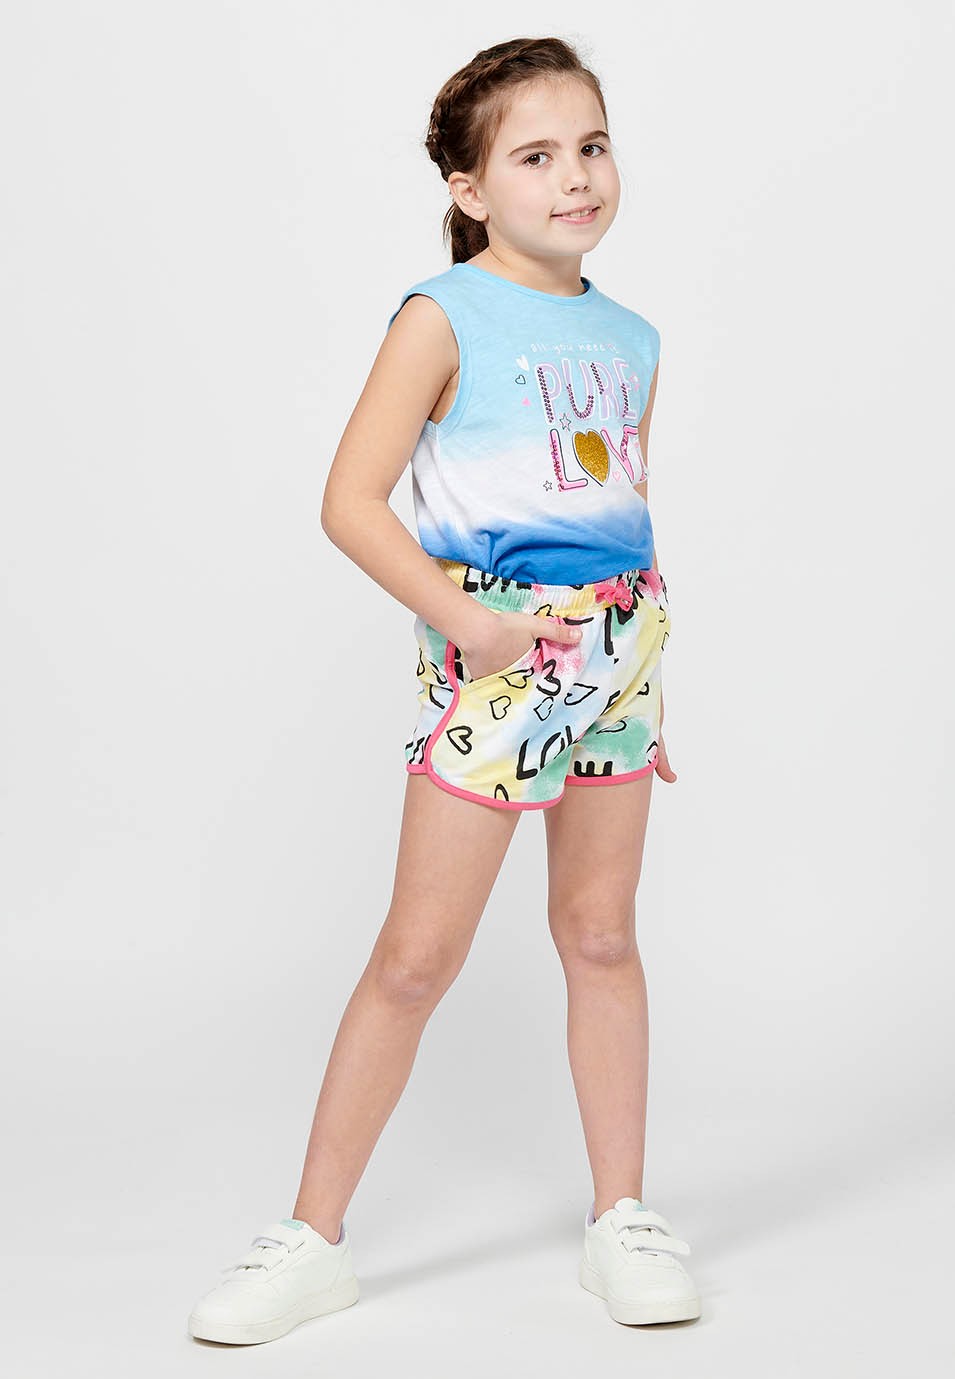 Pantalons curts Short amb Cintura engomada ajustable amb cordó de Color Multicolor per a Nena